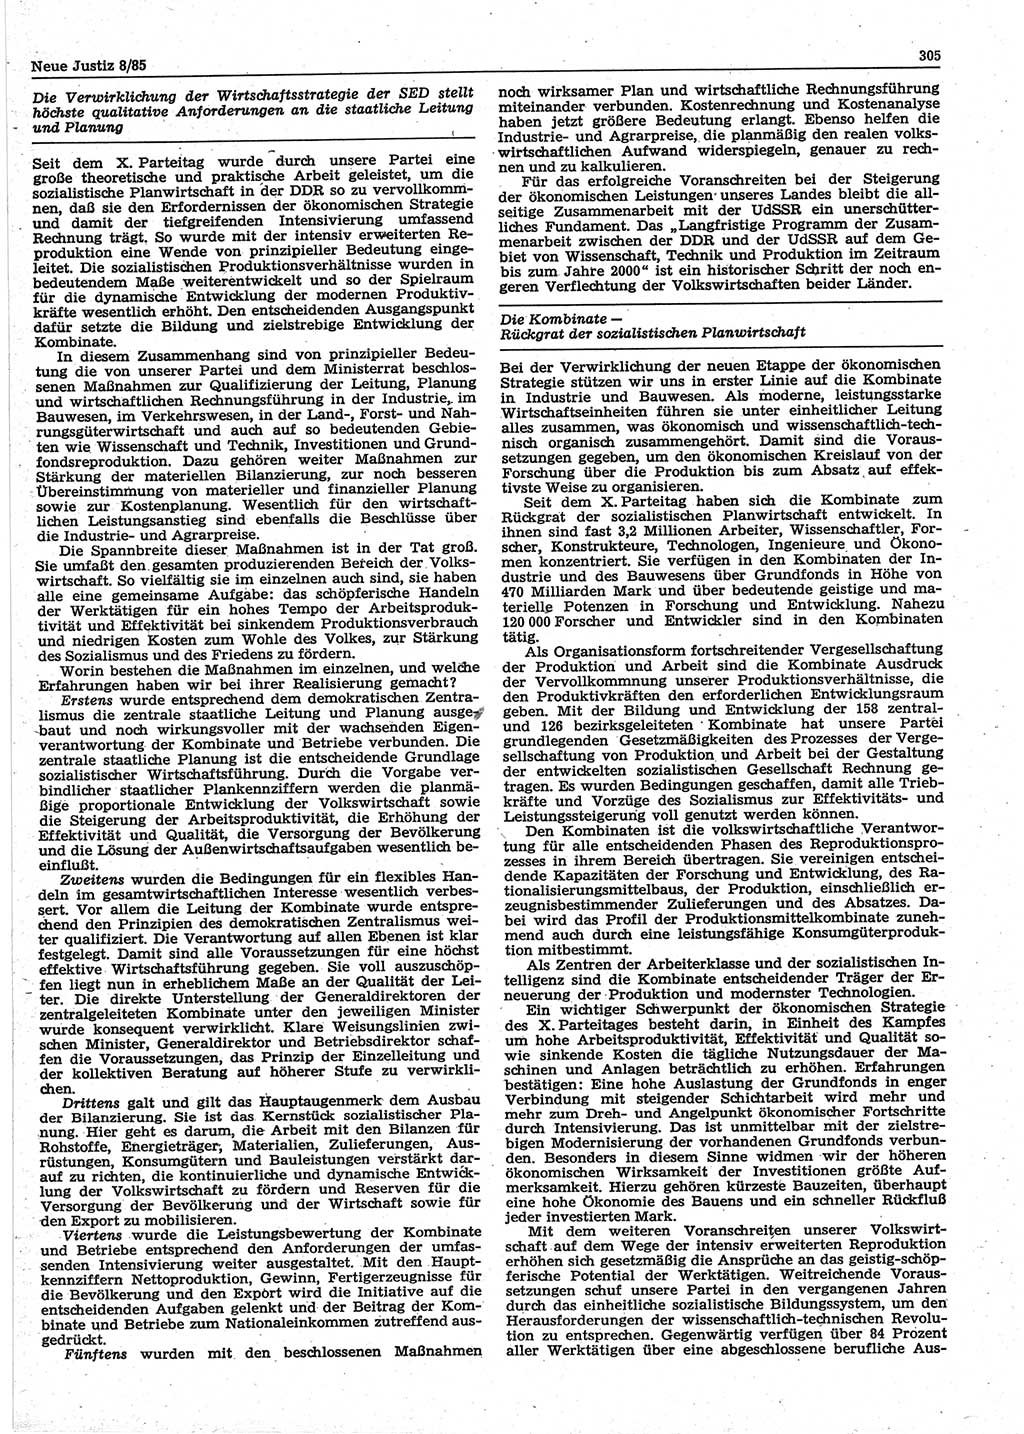 Neue Justiz (NJ), Zeitschrift für sozialistisches Recht und Gesetzlichkeit [Deutsche Demokratische Republik (DDR)], 39. Jahrgang 1985, Seite 305 (NJ DDR 1985, S. 305)